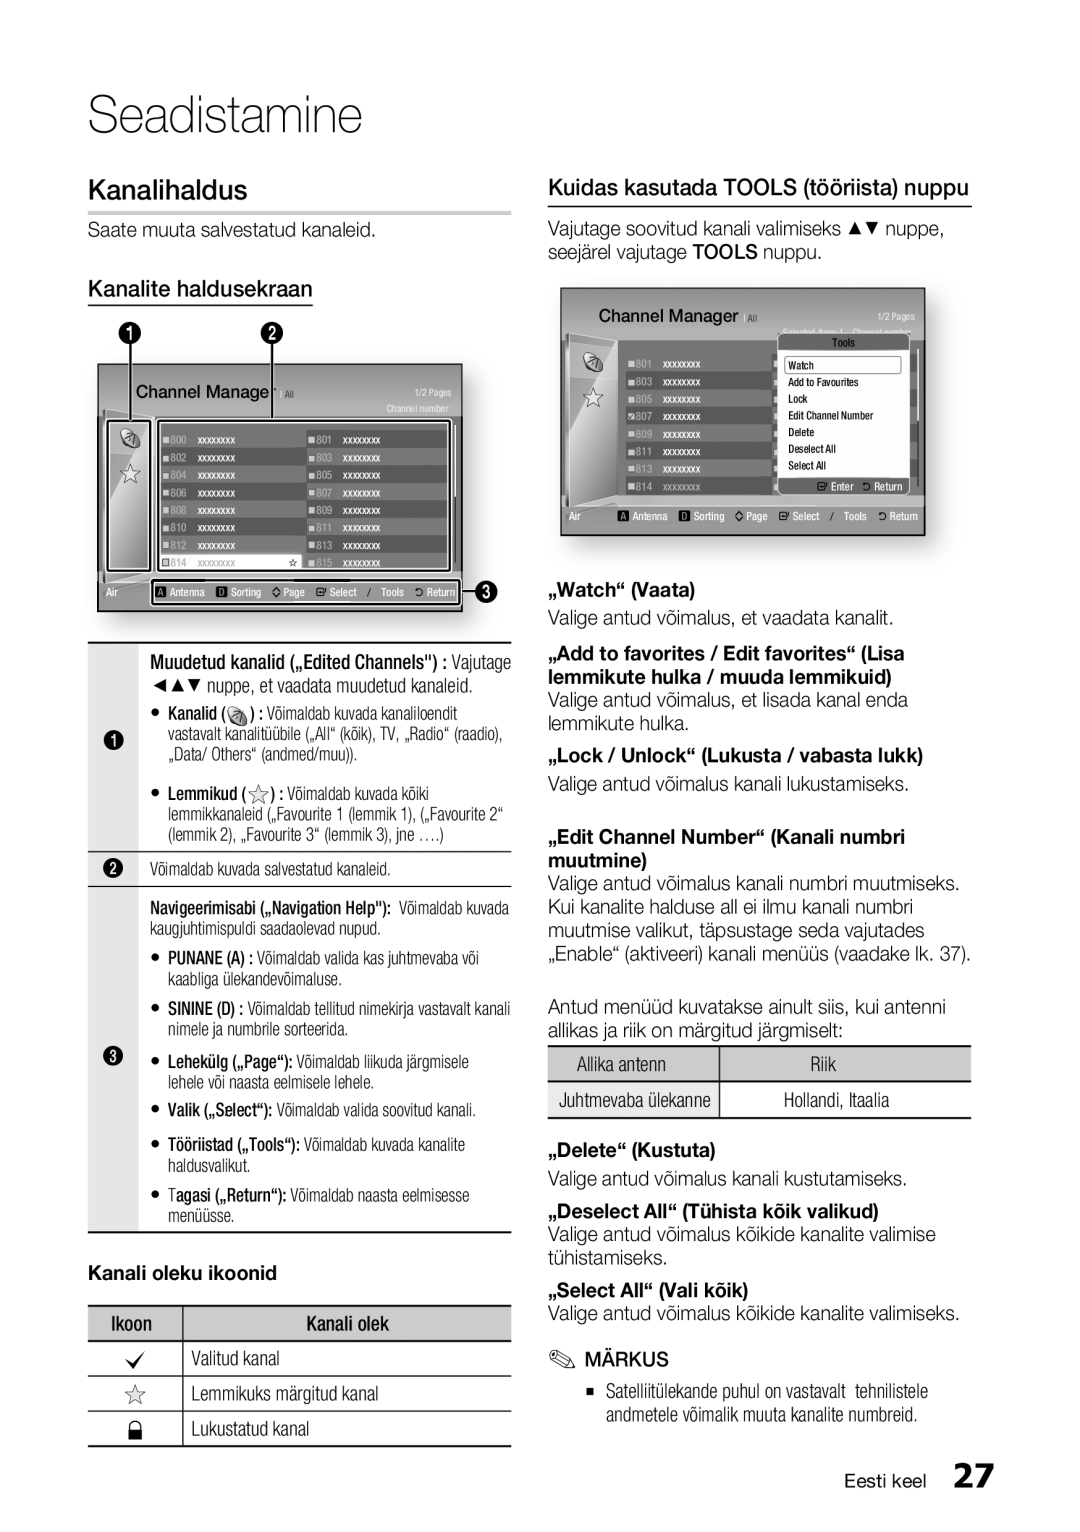 Samsung BD-E6300/EN manual Kanalihaldus, Kanalite haldusekraan, Kuidas kasutada TOOLS tööriista nuppu, Kanali oleku ikoonid 